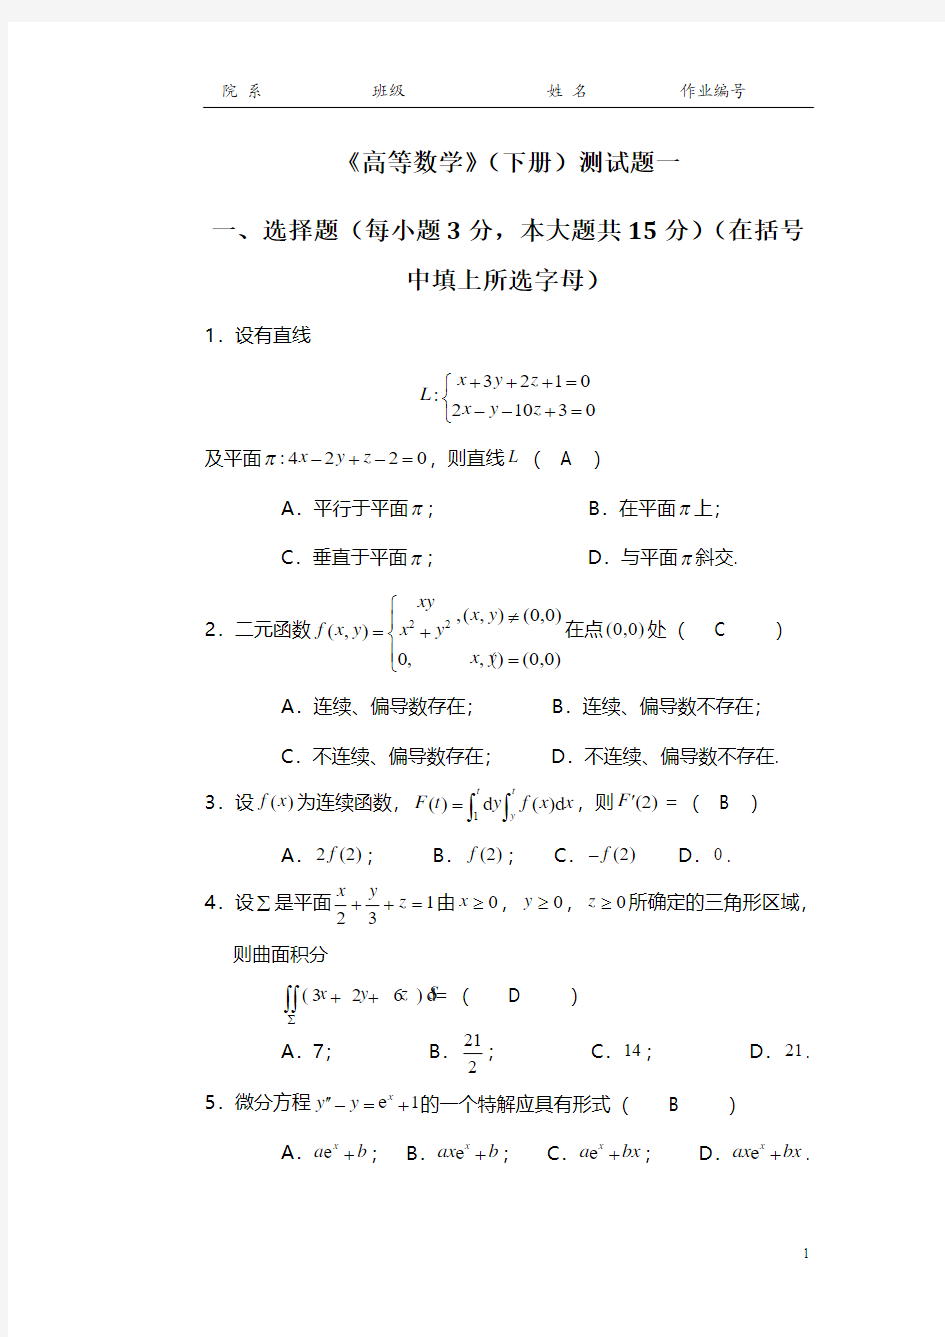 高等数学-微积分下-习题册答案-华南理工大学 (6)